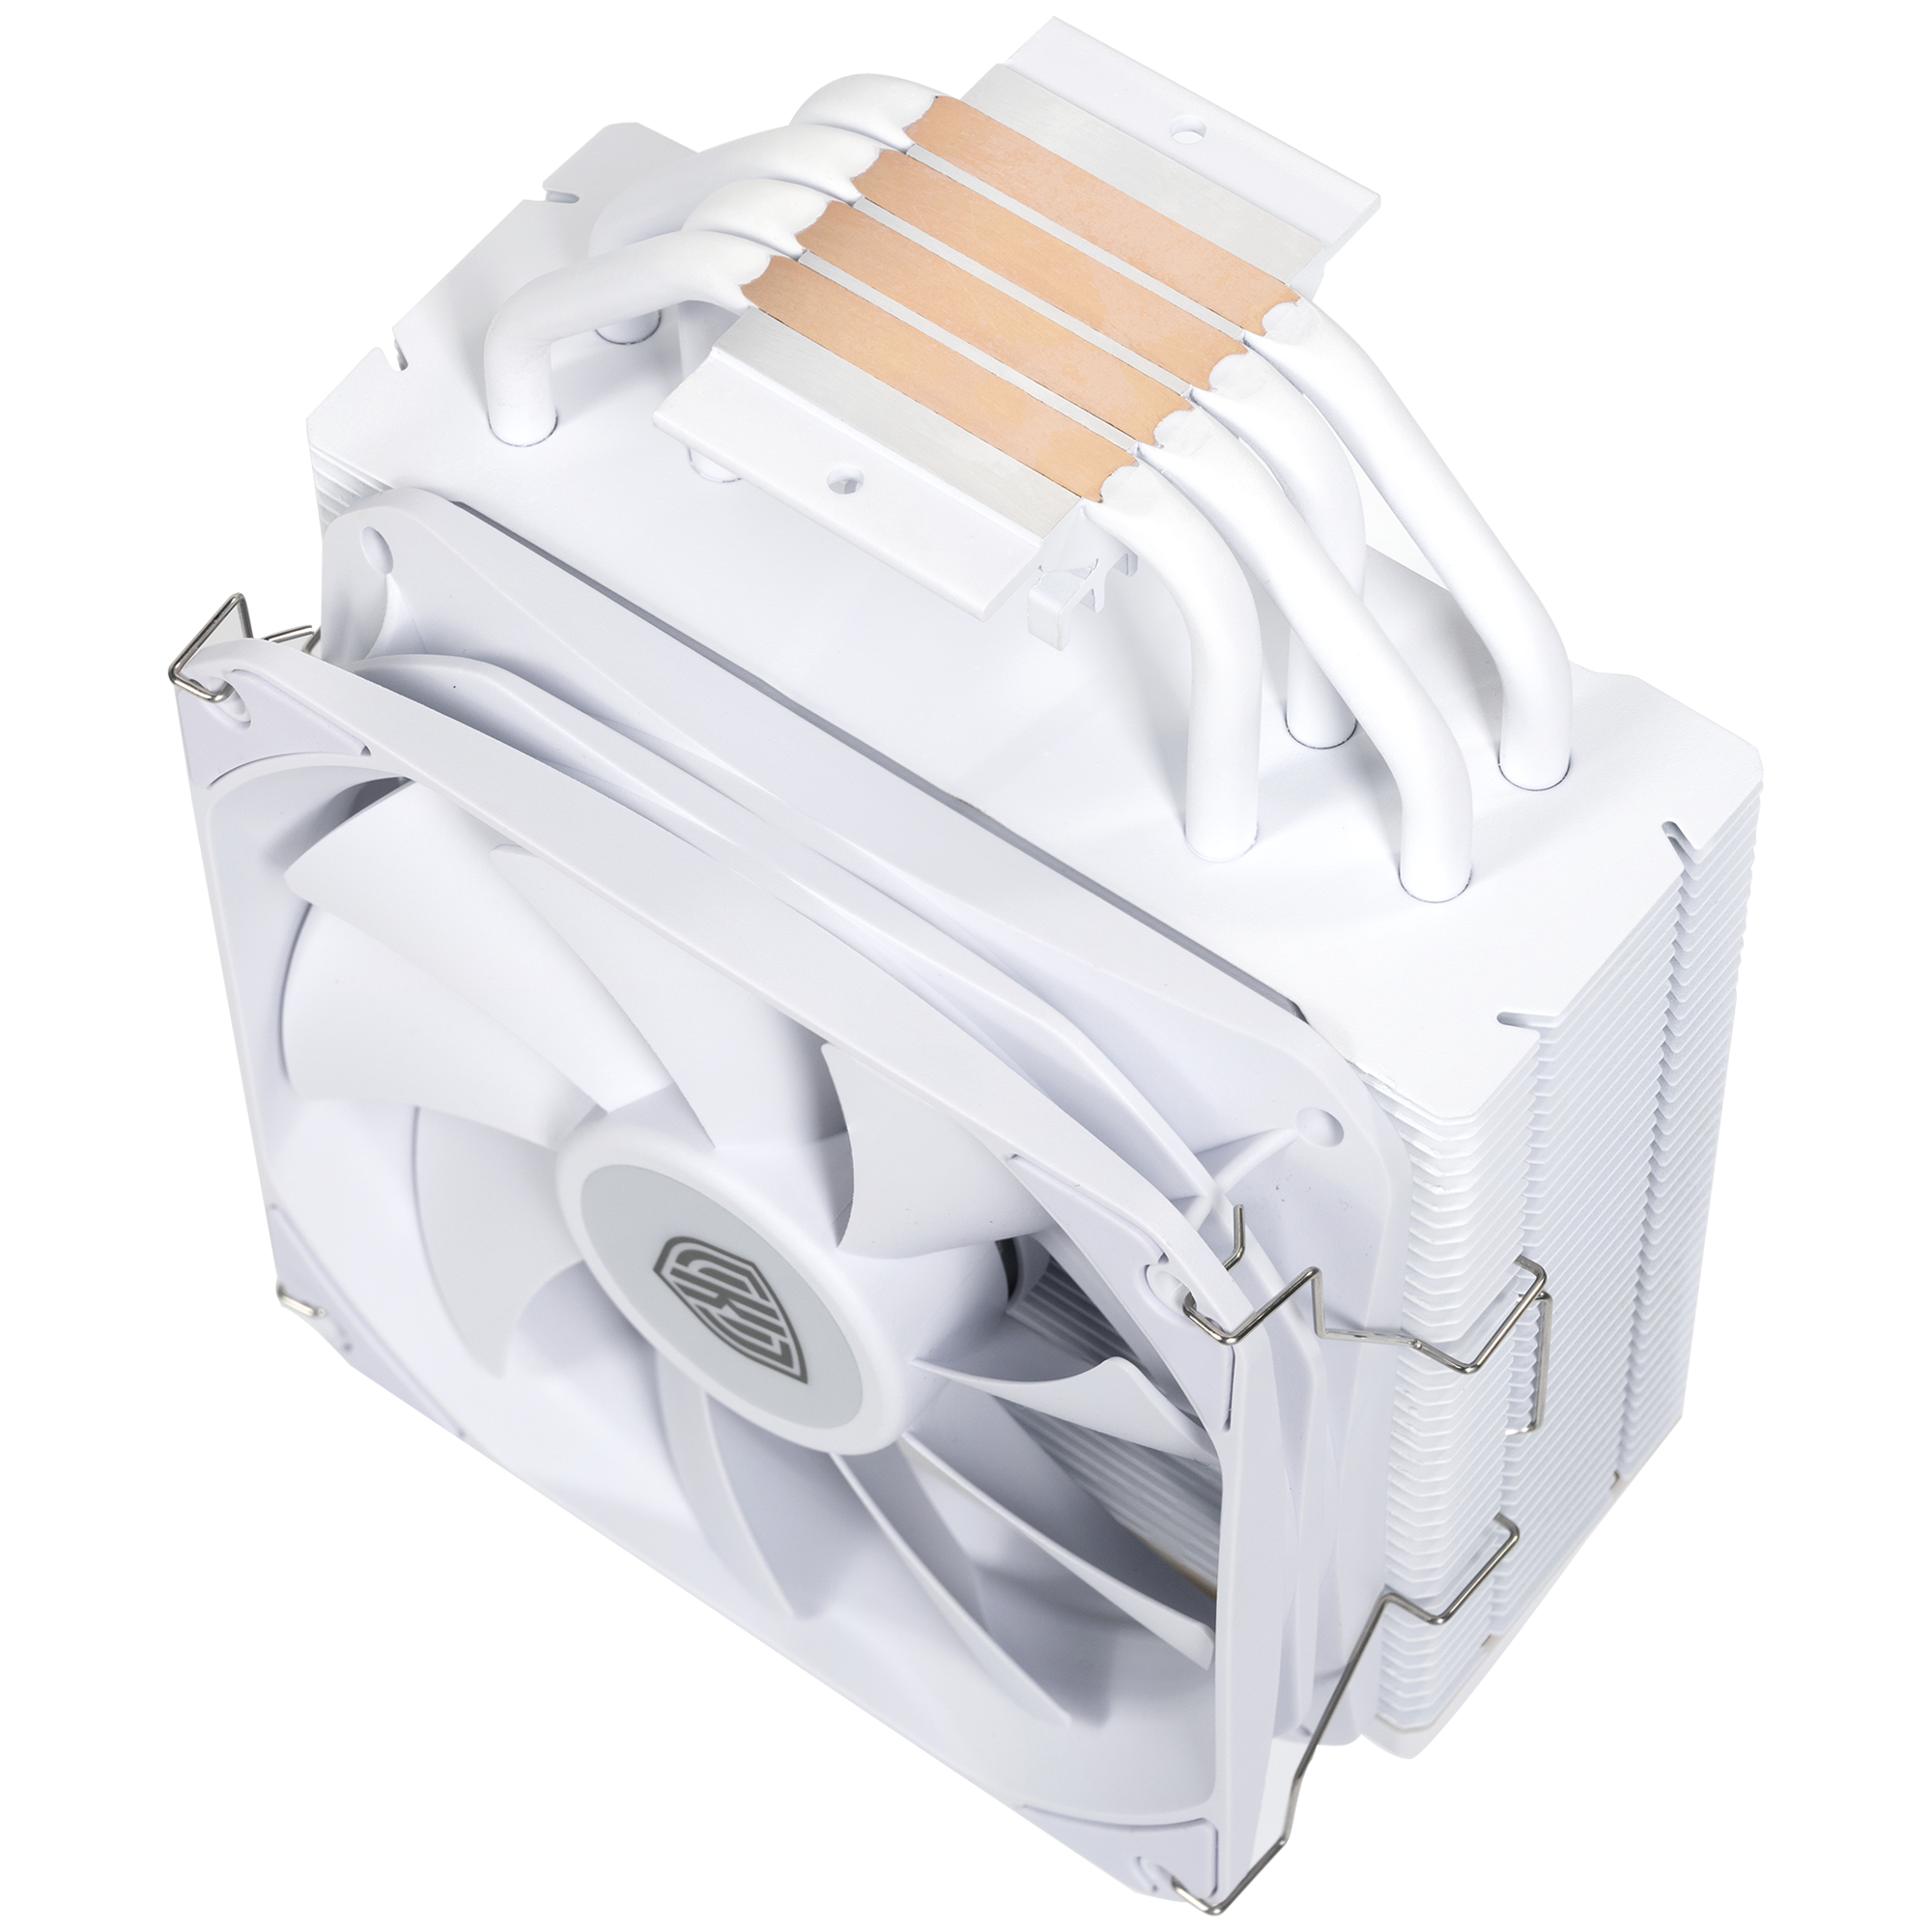 Kolink - Kolink Umbra EX180 White Edition CPU Cooler - 120mm